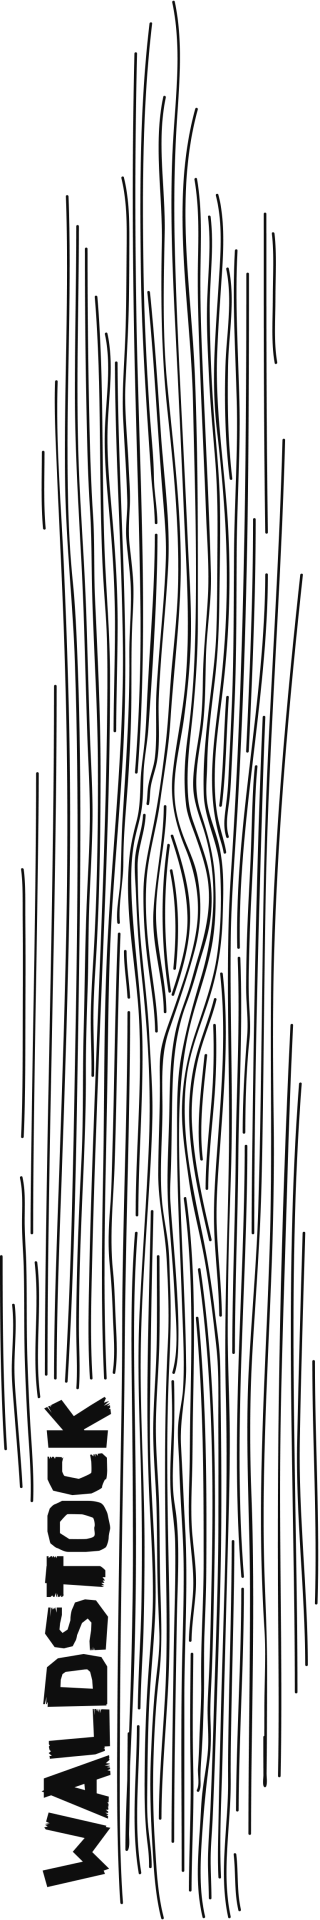 Abstraktes T-Shirt-Motiv: viele senkrechte Linien, ähnlich wie Baumrinde.